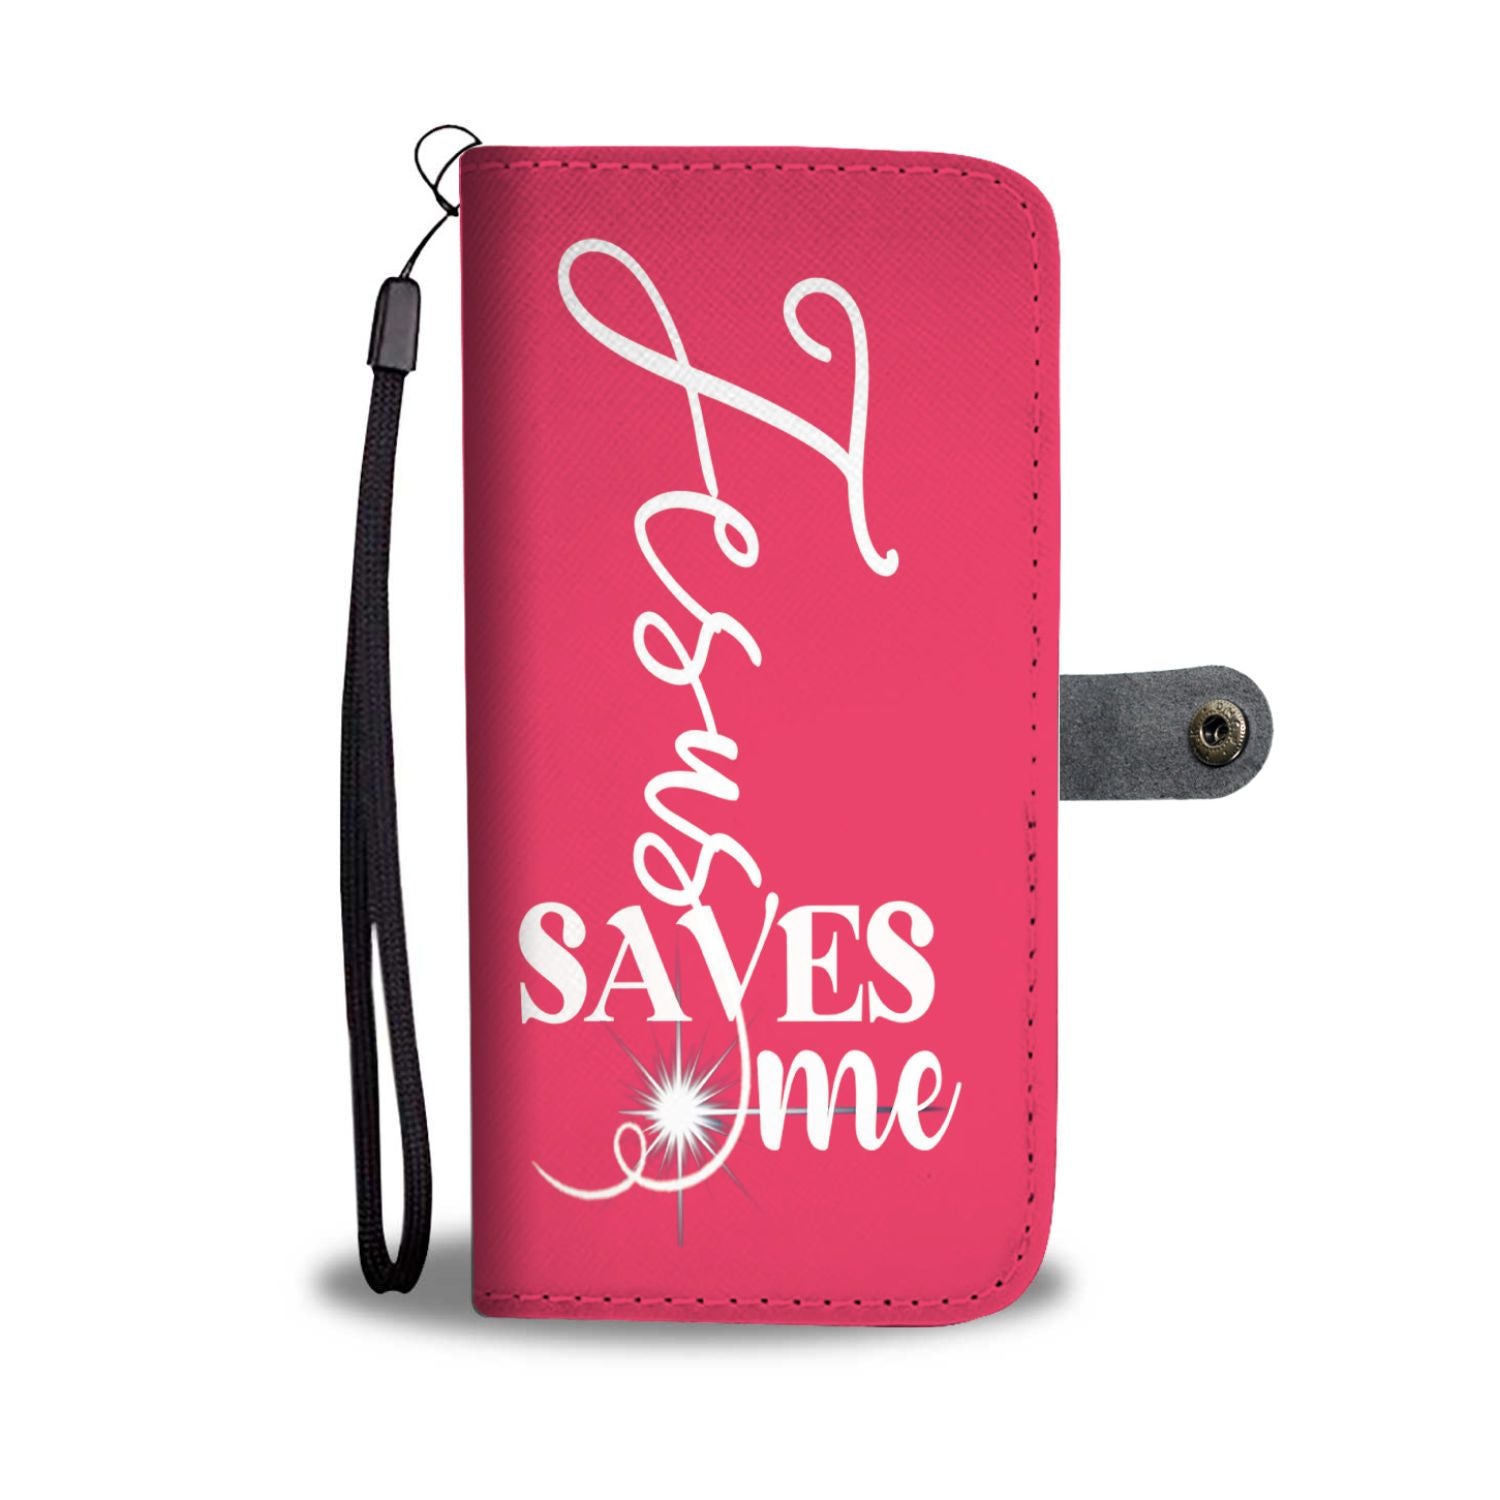 "JESUS SAVES ME" Wallet.